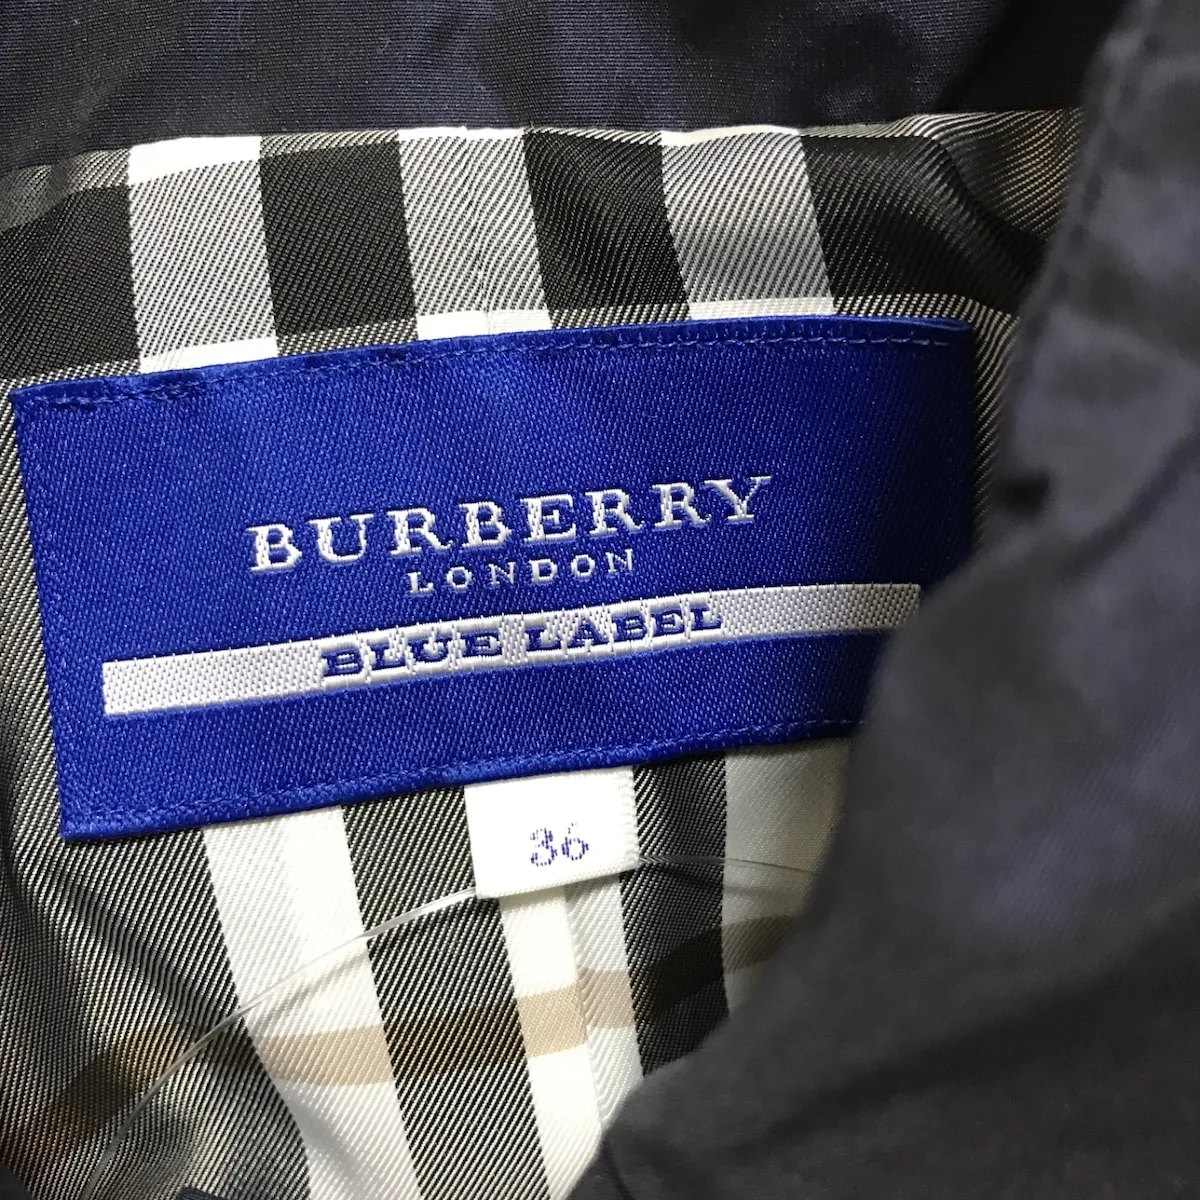 Burberry Blue Label(バーバリーブルーレーベル) ジャケット サイズ36 